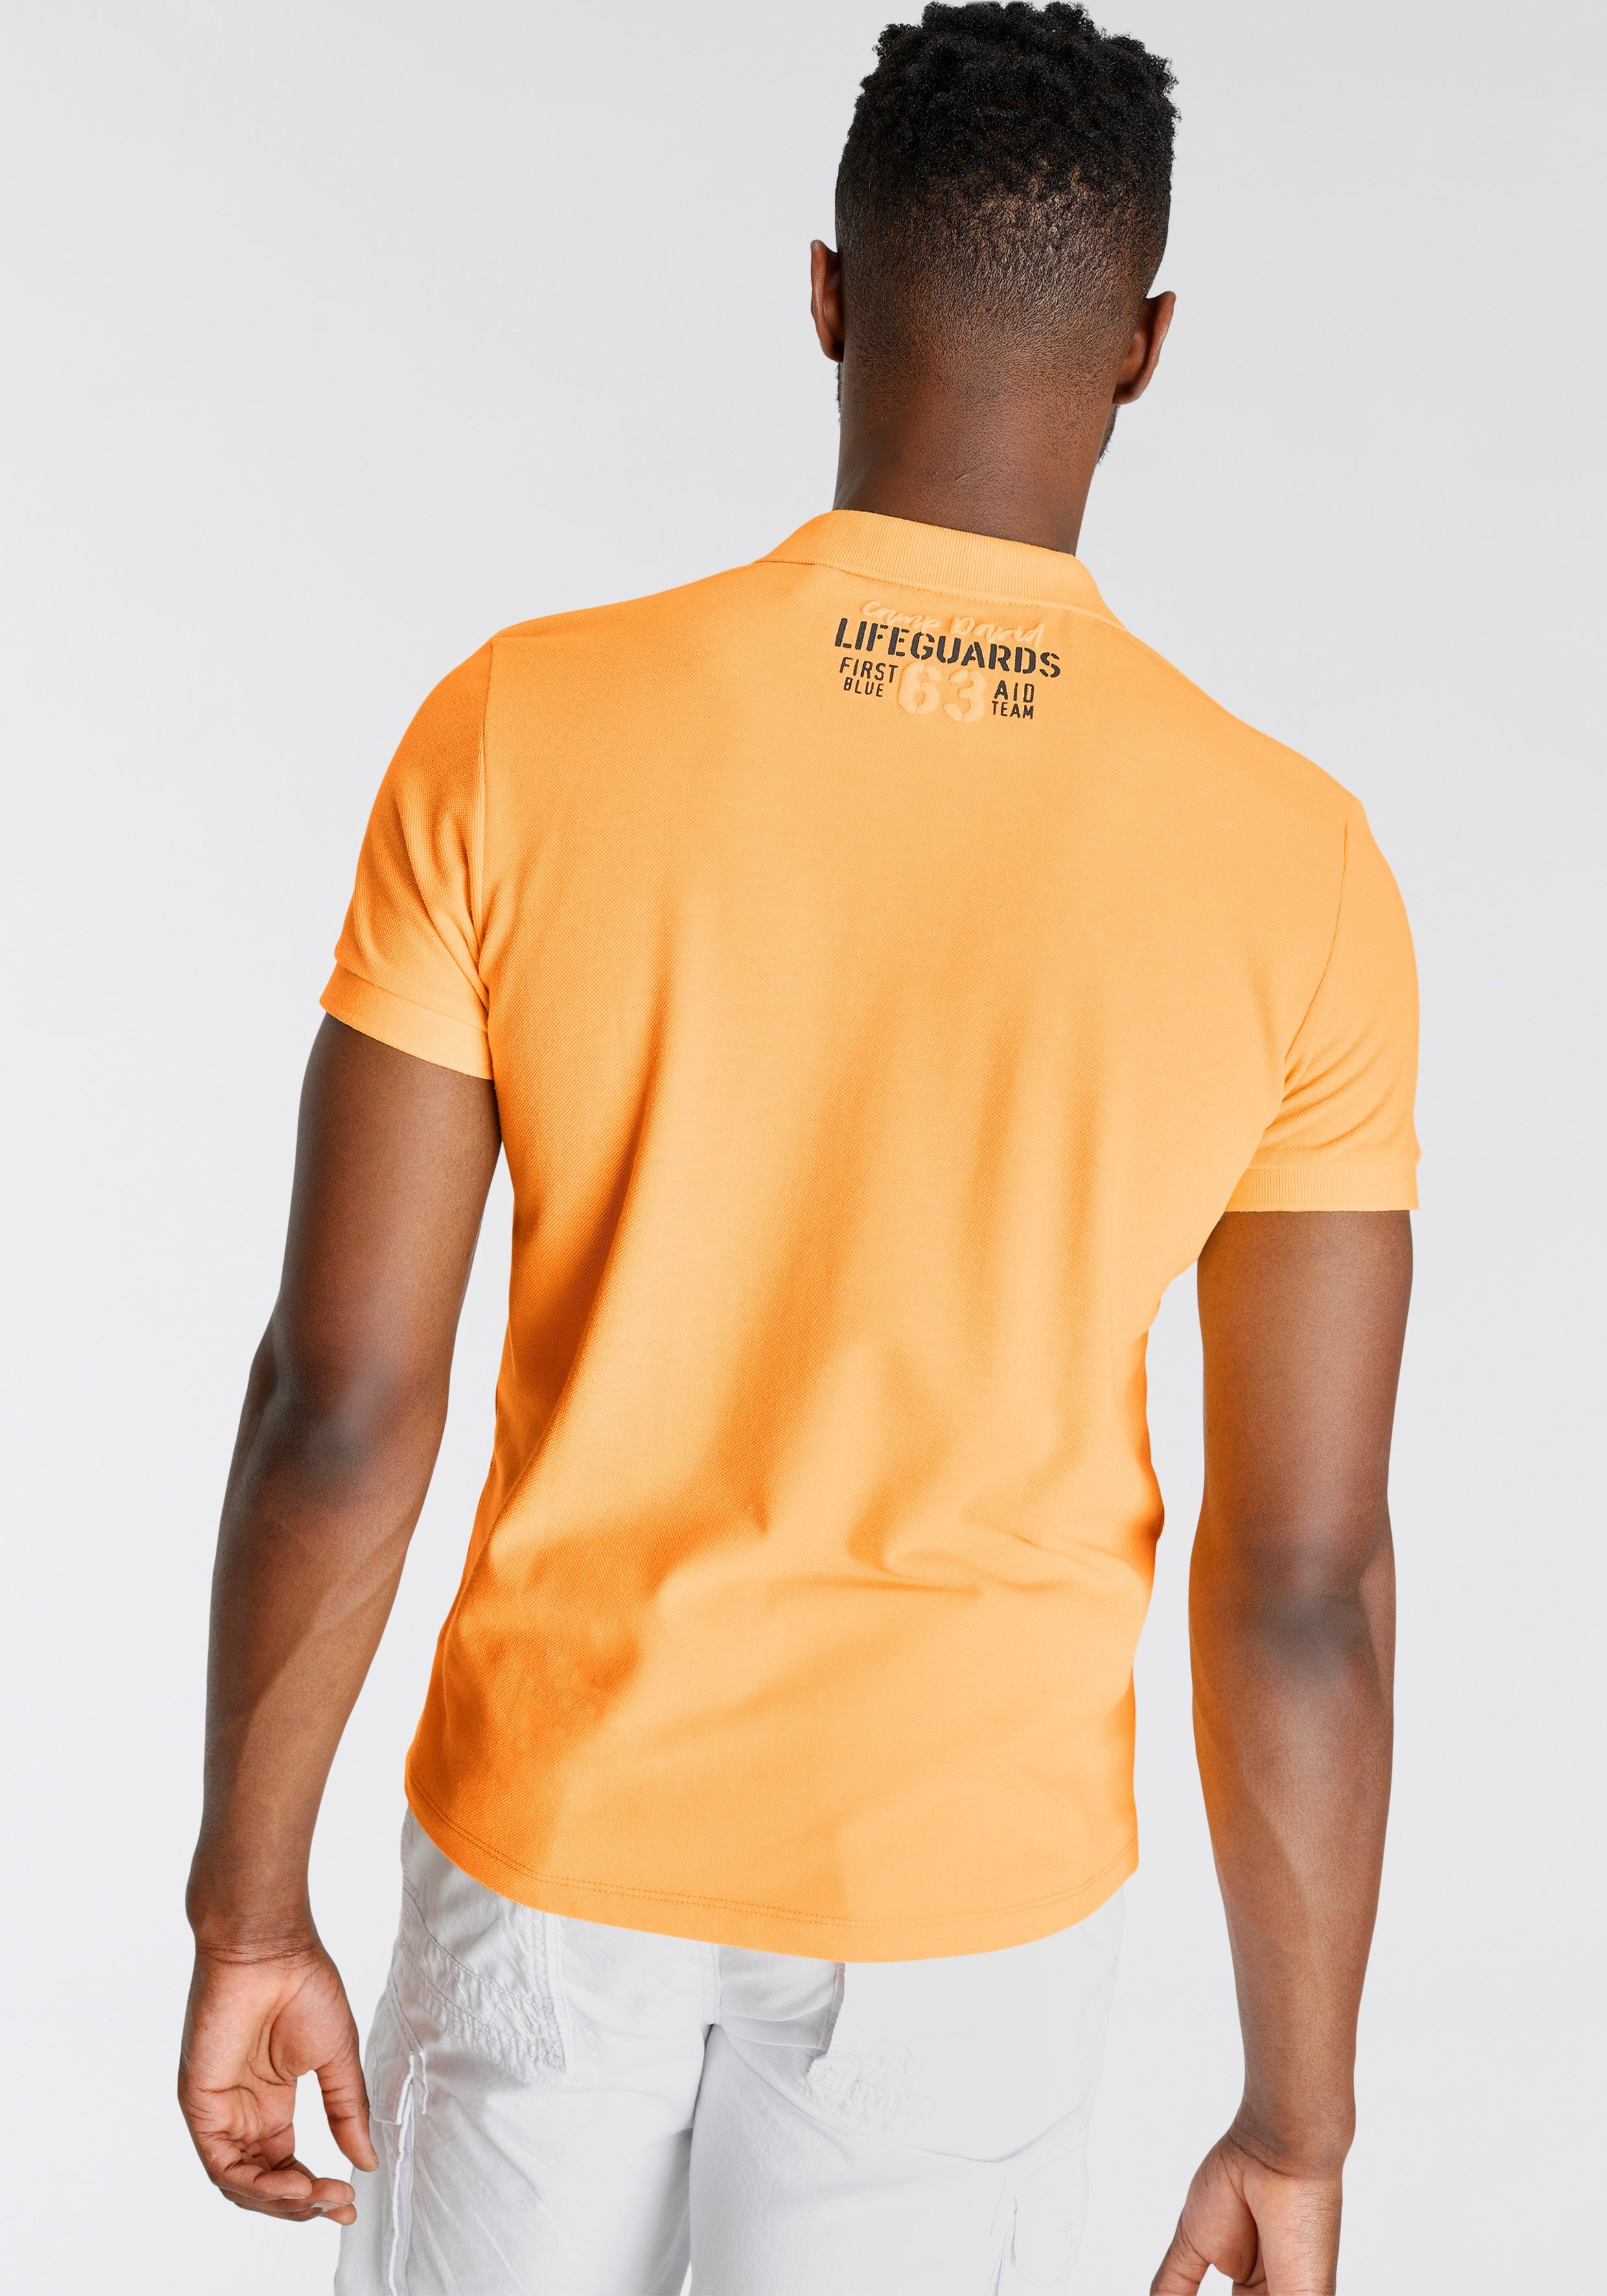 neon hochwertiger CAMP Piqué-Qualität sunrise Poloshirt in DAVID